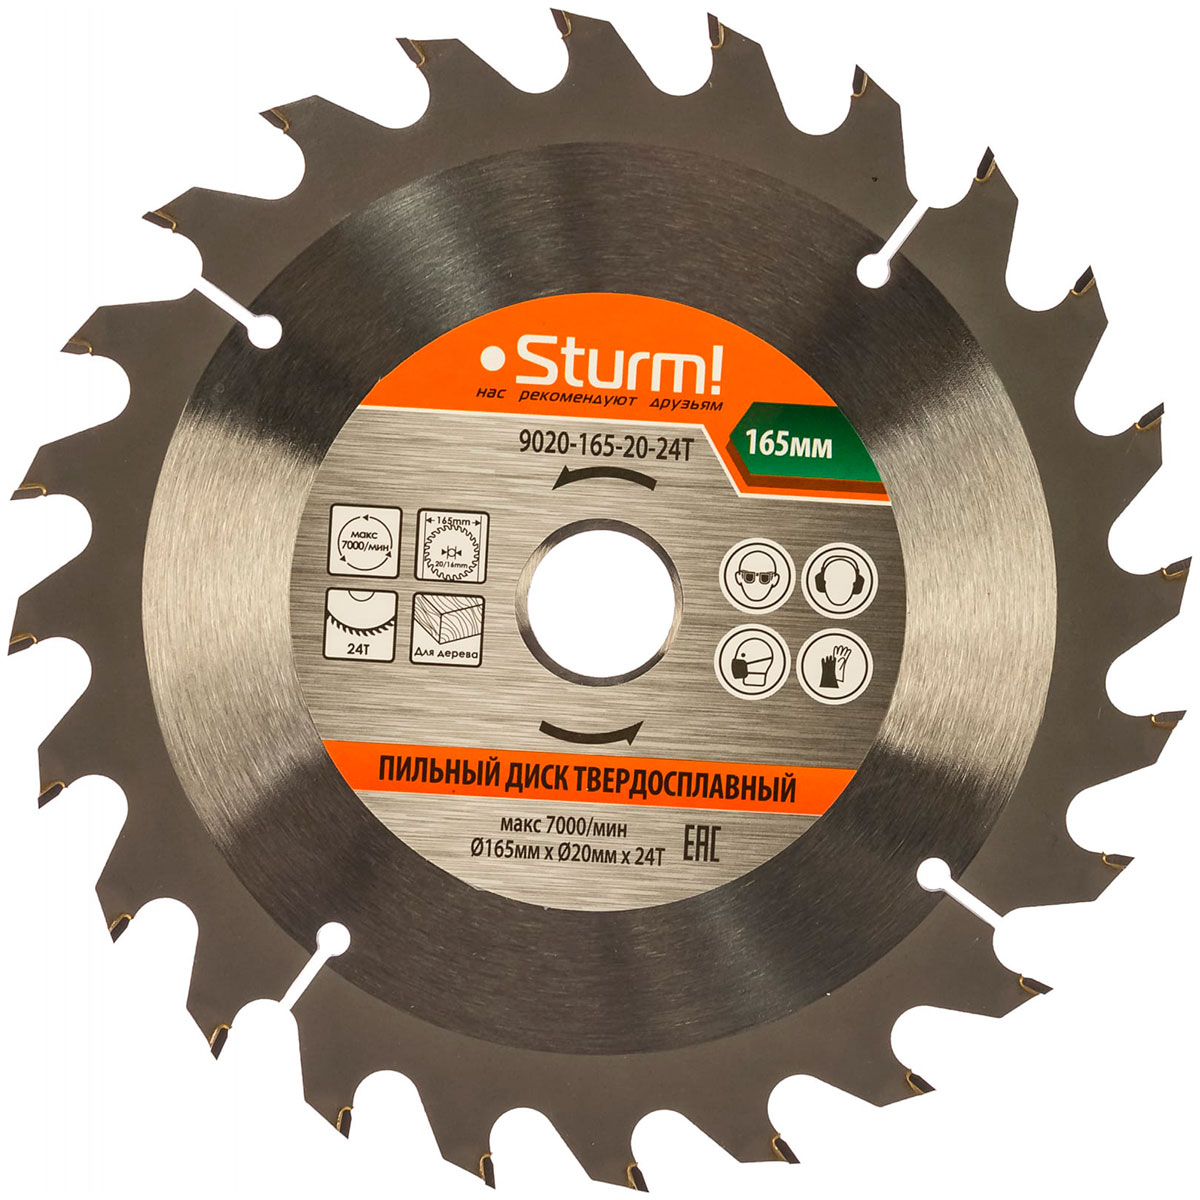 Пильный диск Sturm 9020-165-20-24T диск пильный по дереву makita 165 20 2 1 2 24t d 51409